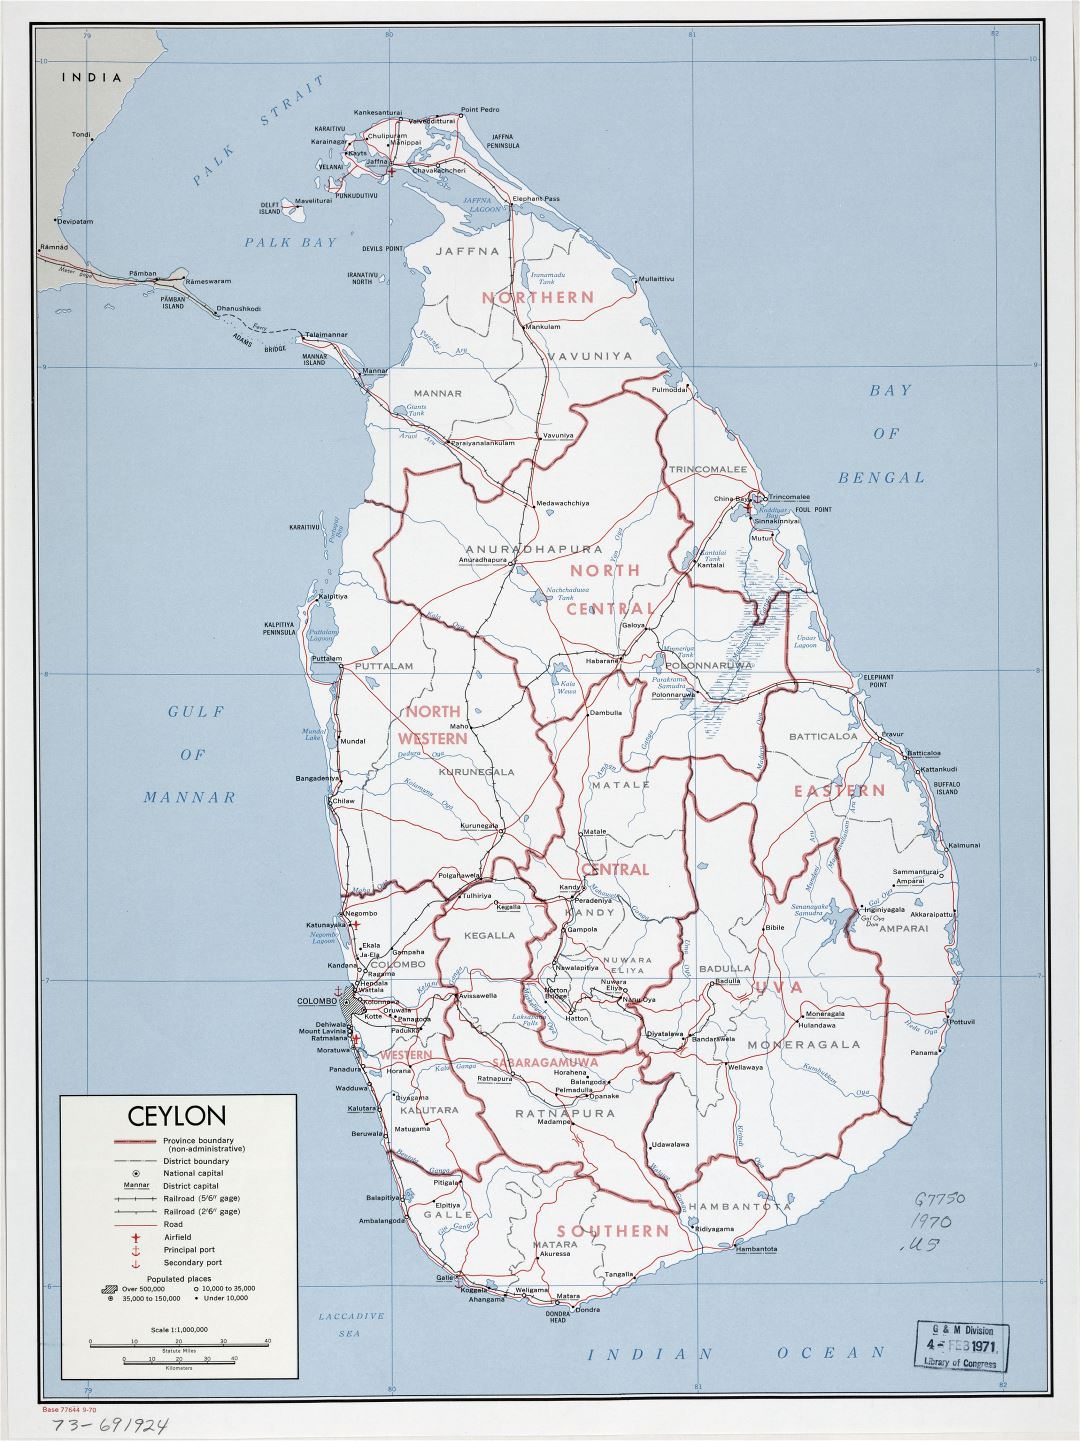 Большая детальная политическая и административная карта Шри-Ланки (Цейлона) с дорогами, железными дорогами, портами, аэропортами и городами - 1970